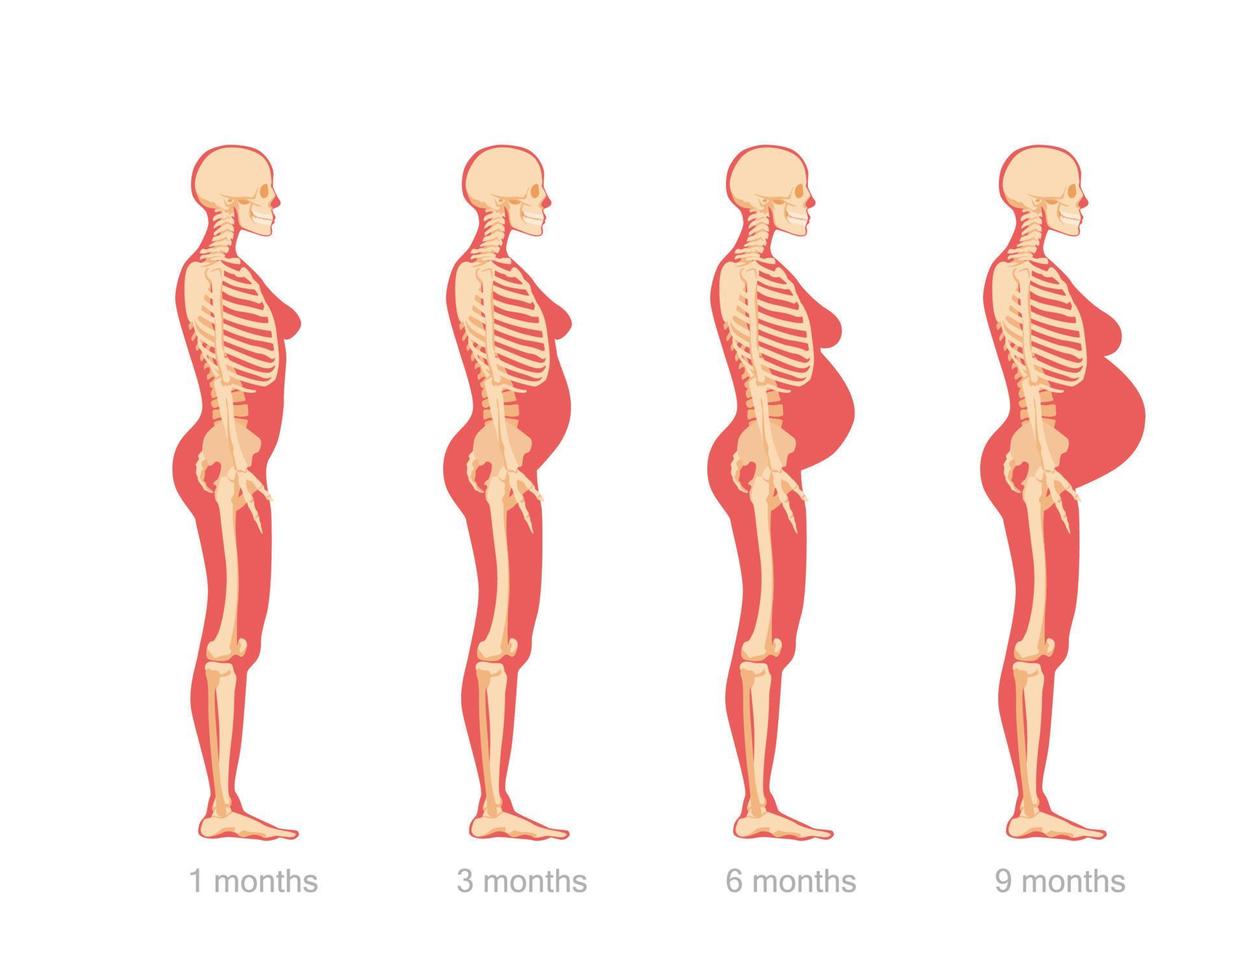 stadier av abdominal utvidgning i gravid kvinna. anatomisk skelett- strukturera kvinna karaktär på annorlunda stadier av vektor graviditet.